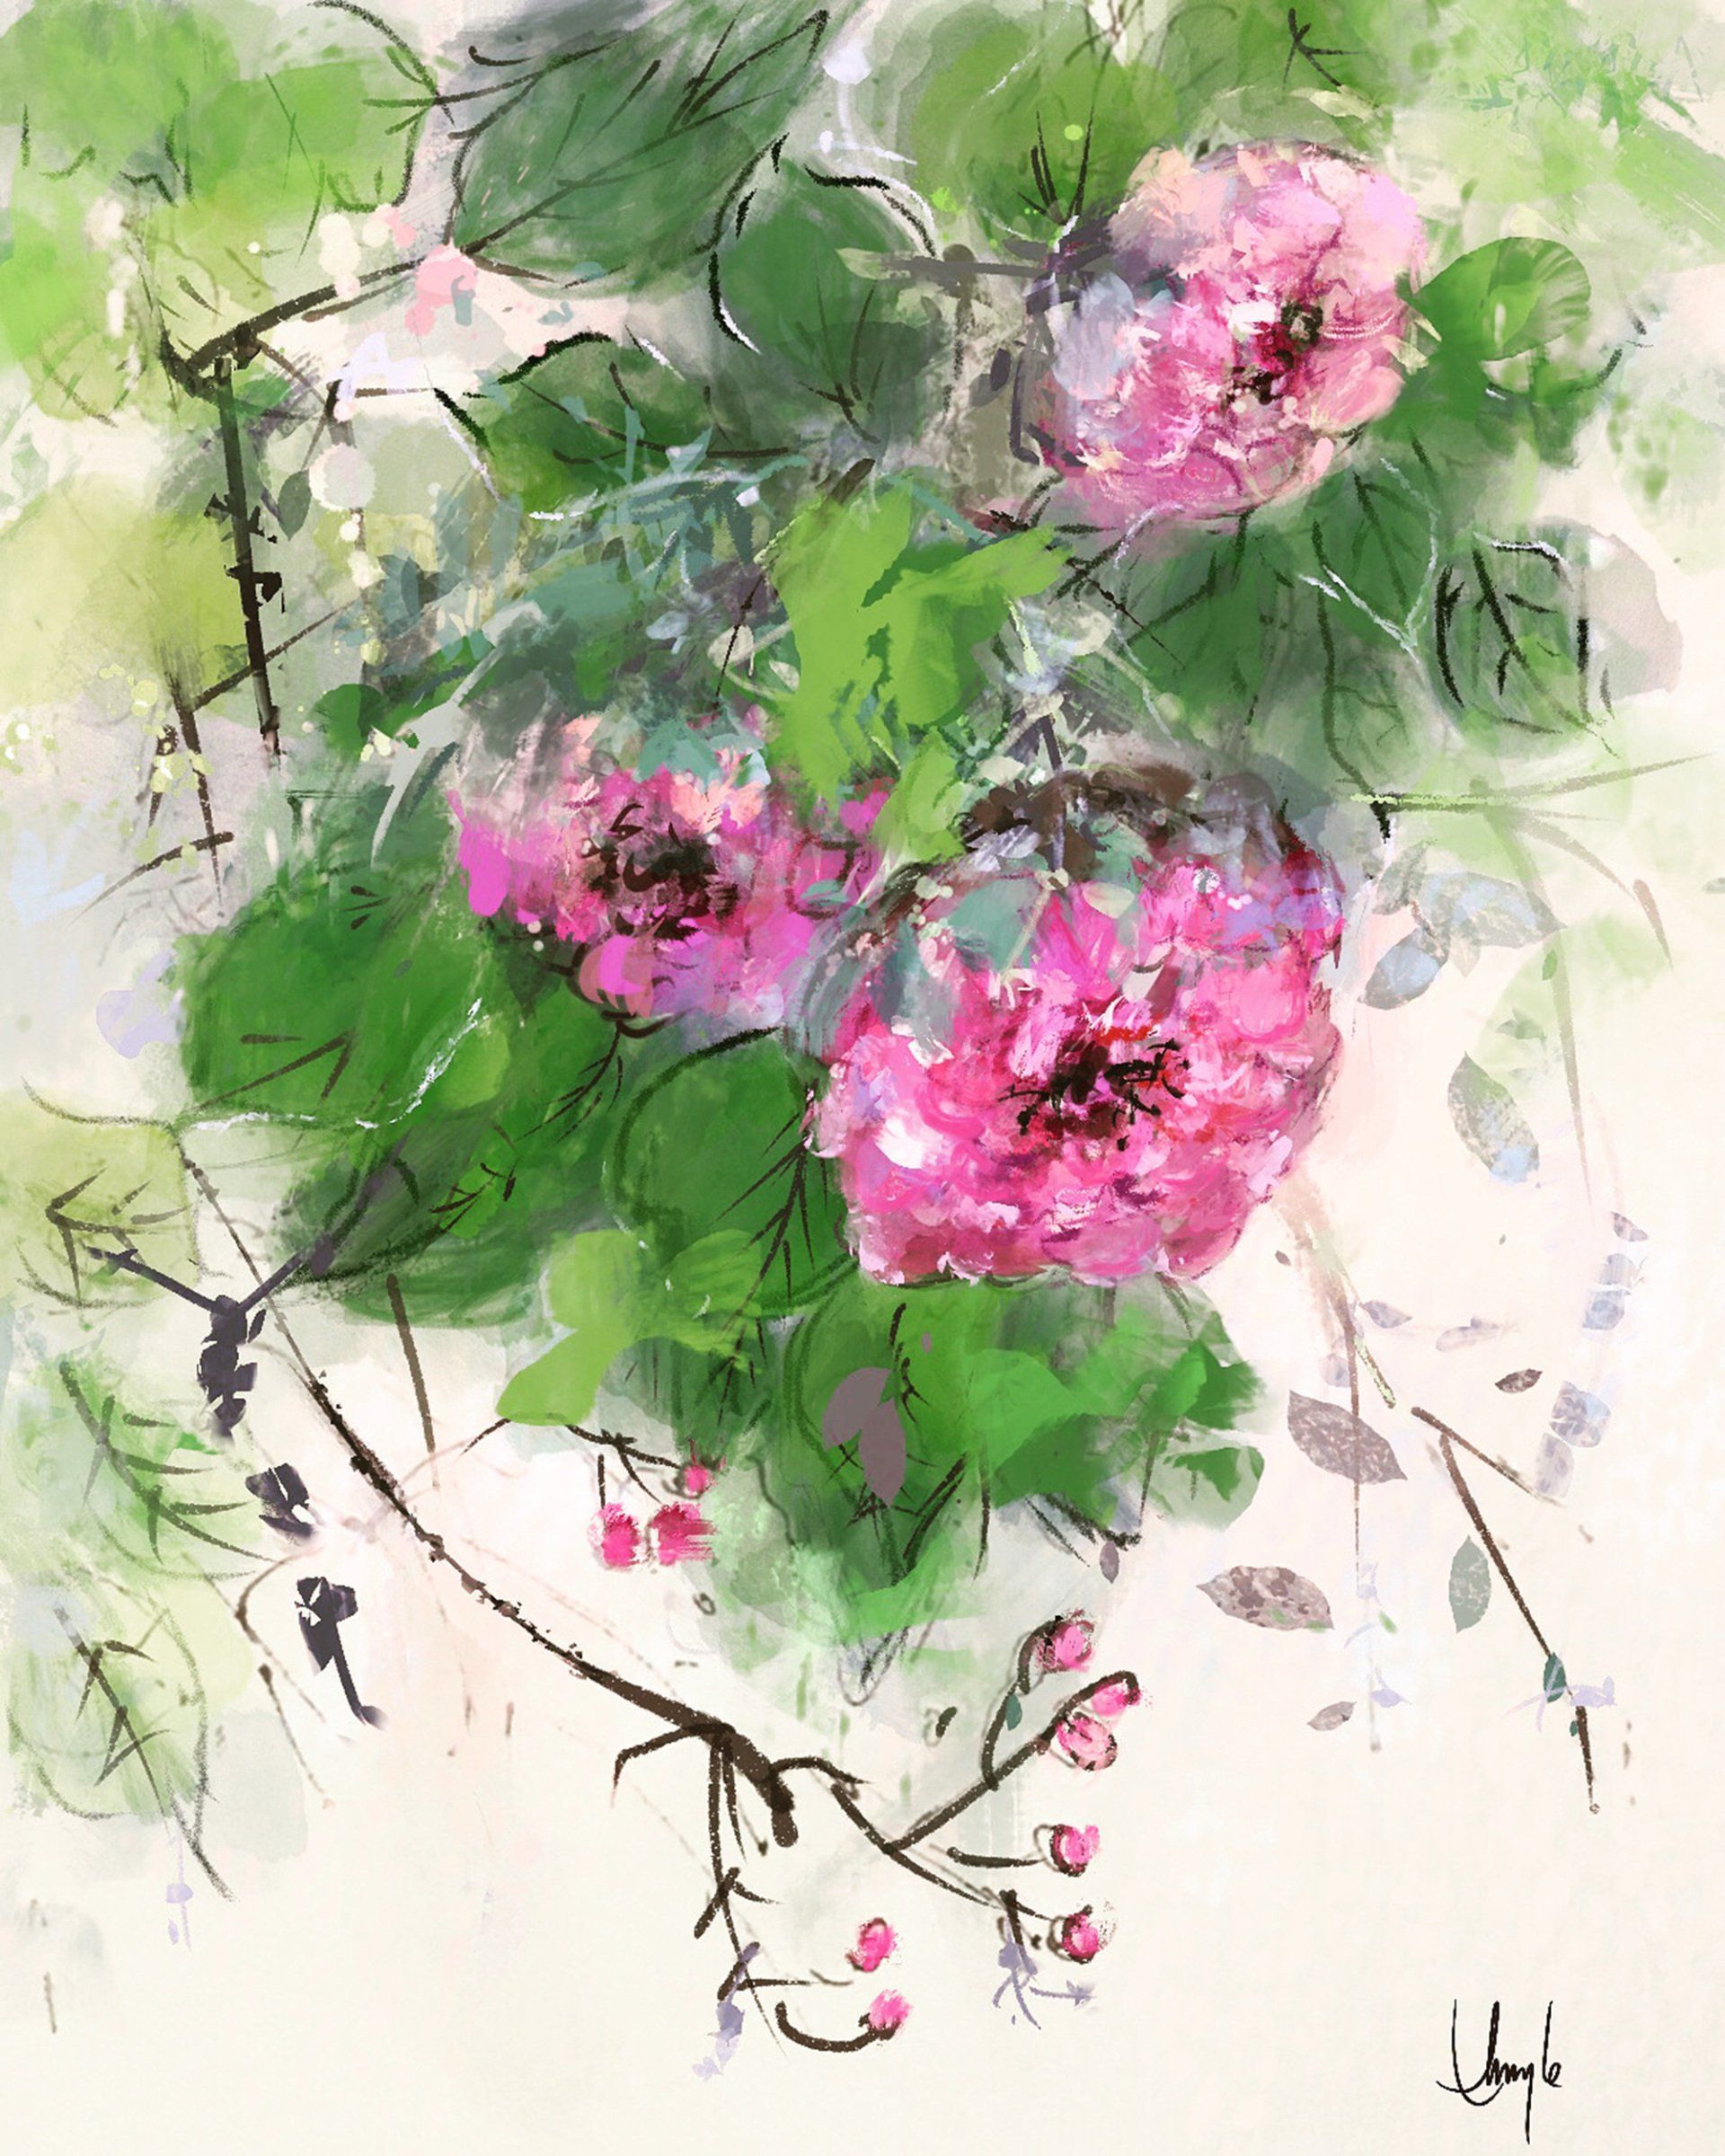 camellia , pink flower, greens, floral, digital art, water color, flower, impressionism